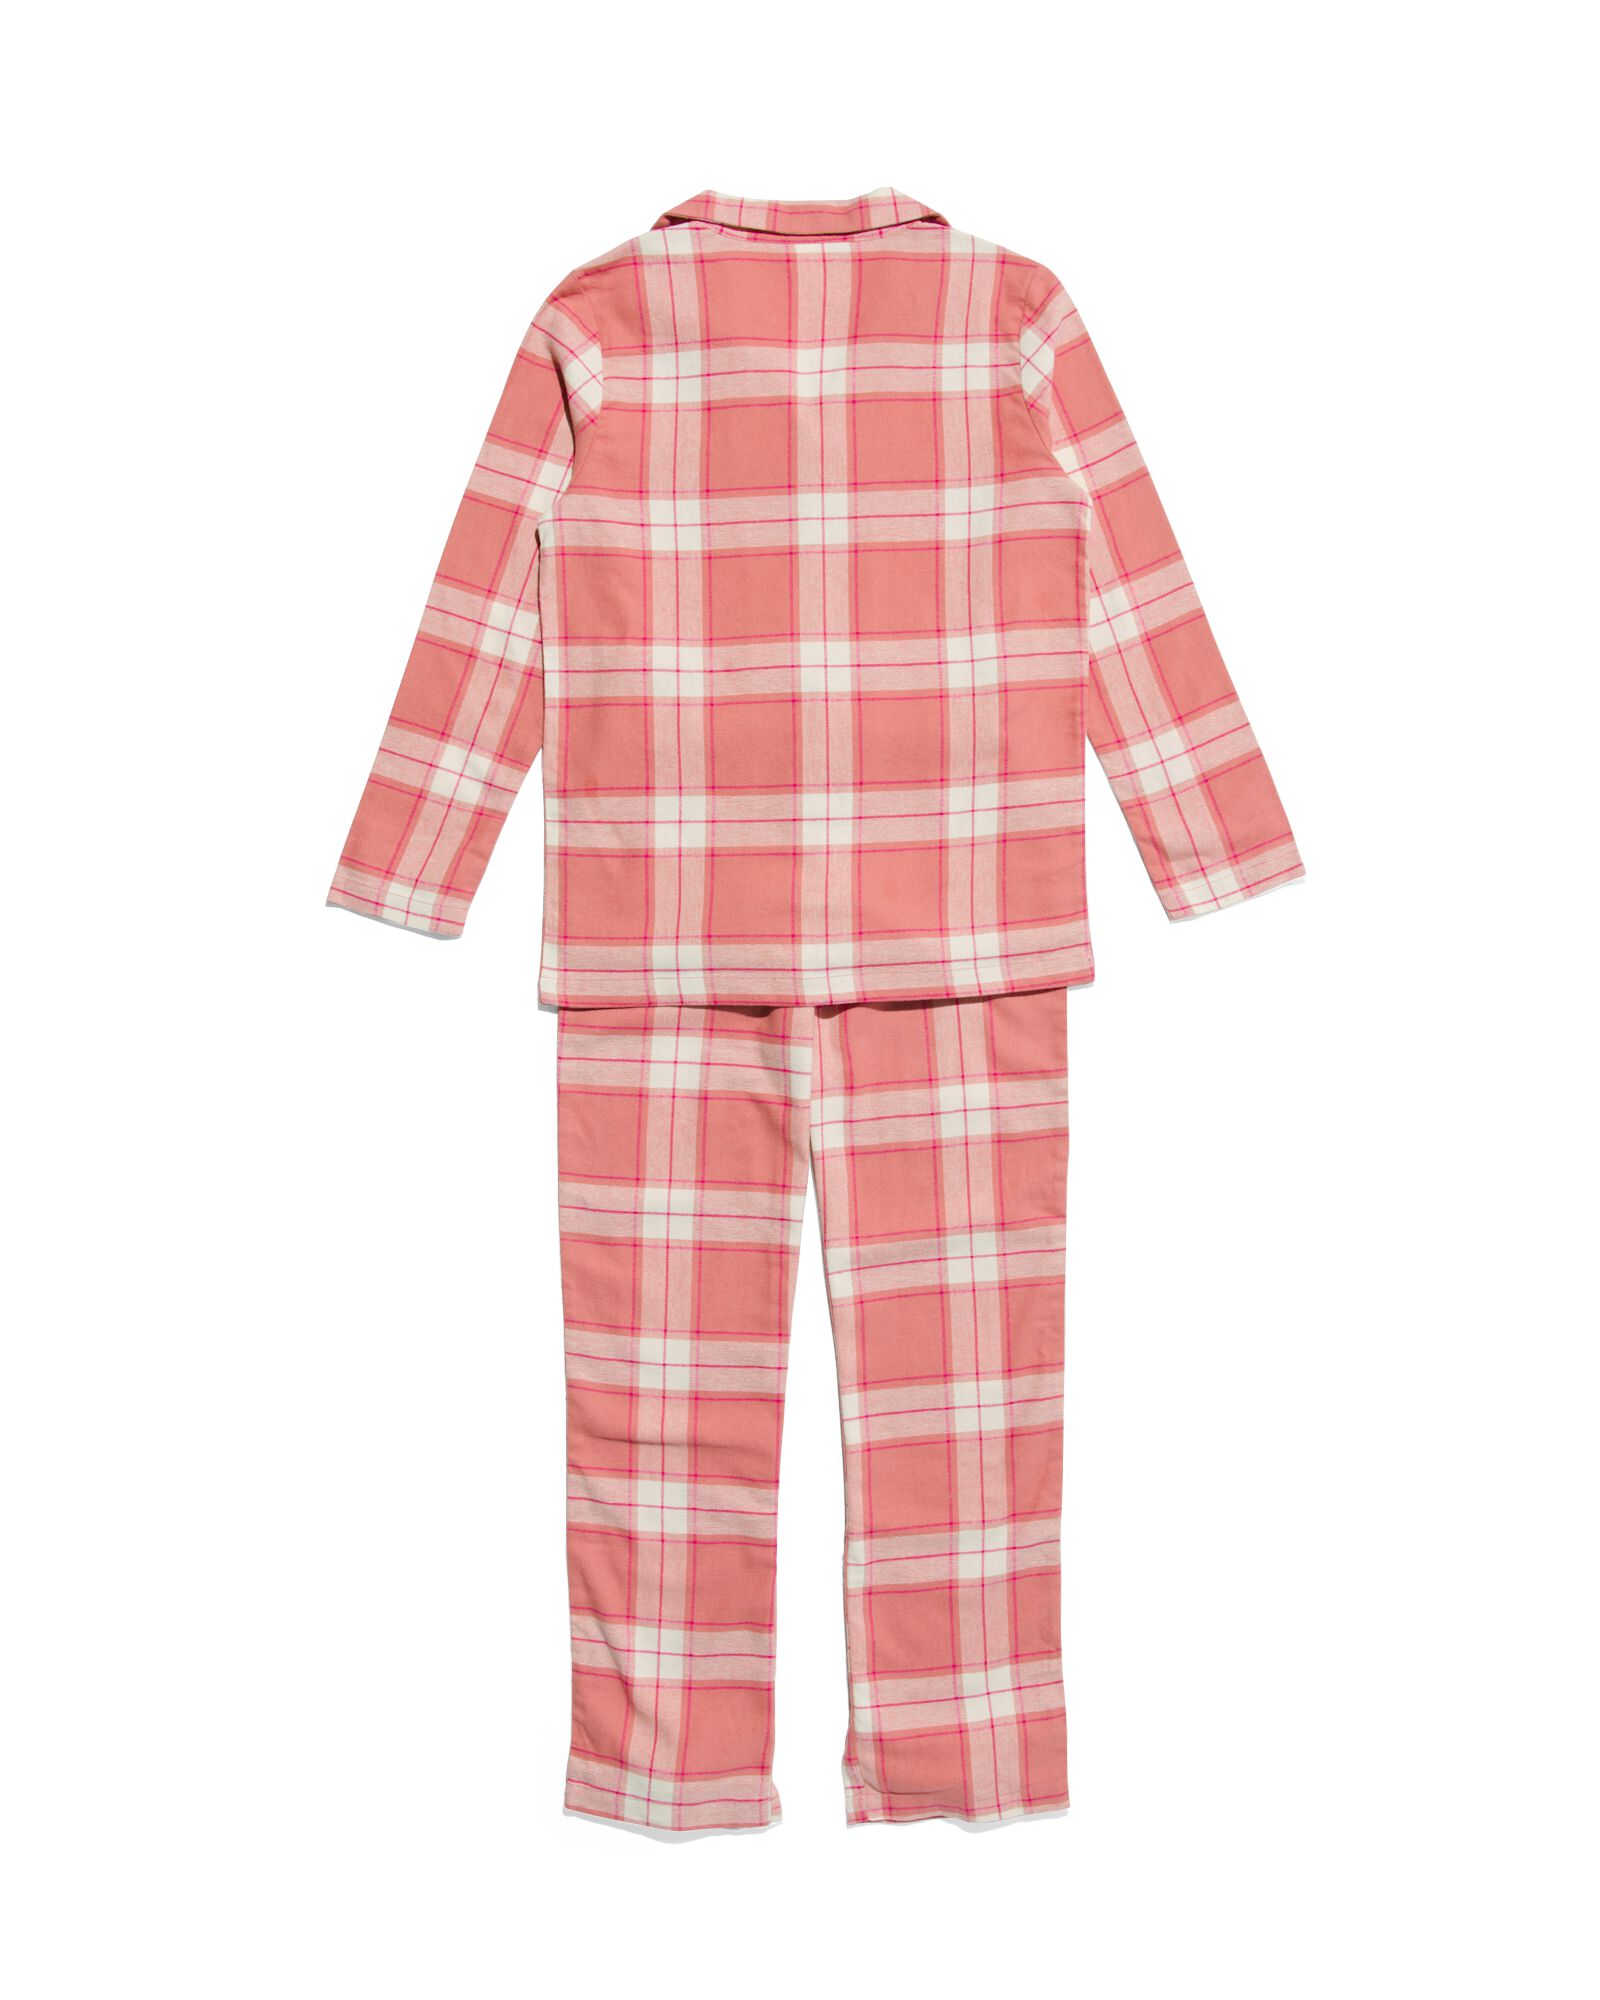 pyjama enfant flanelle à carreaux rose rose - 23070480PINK - HEMA